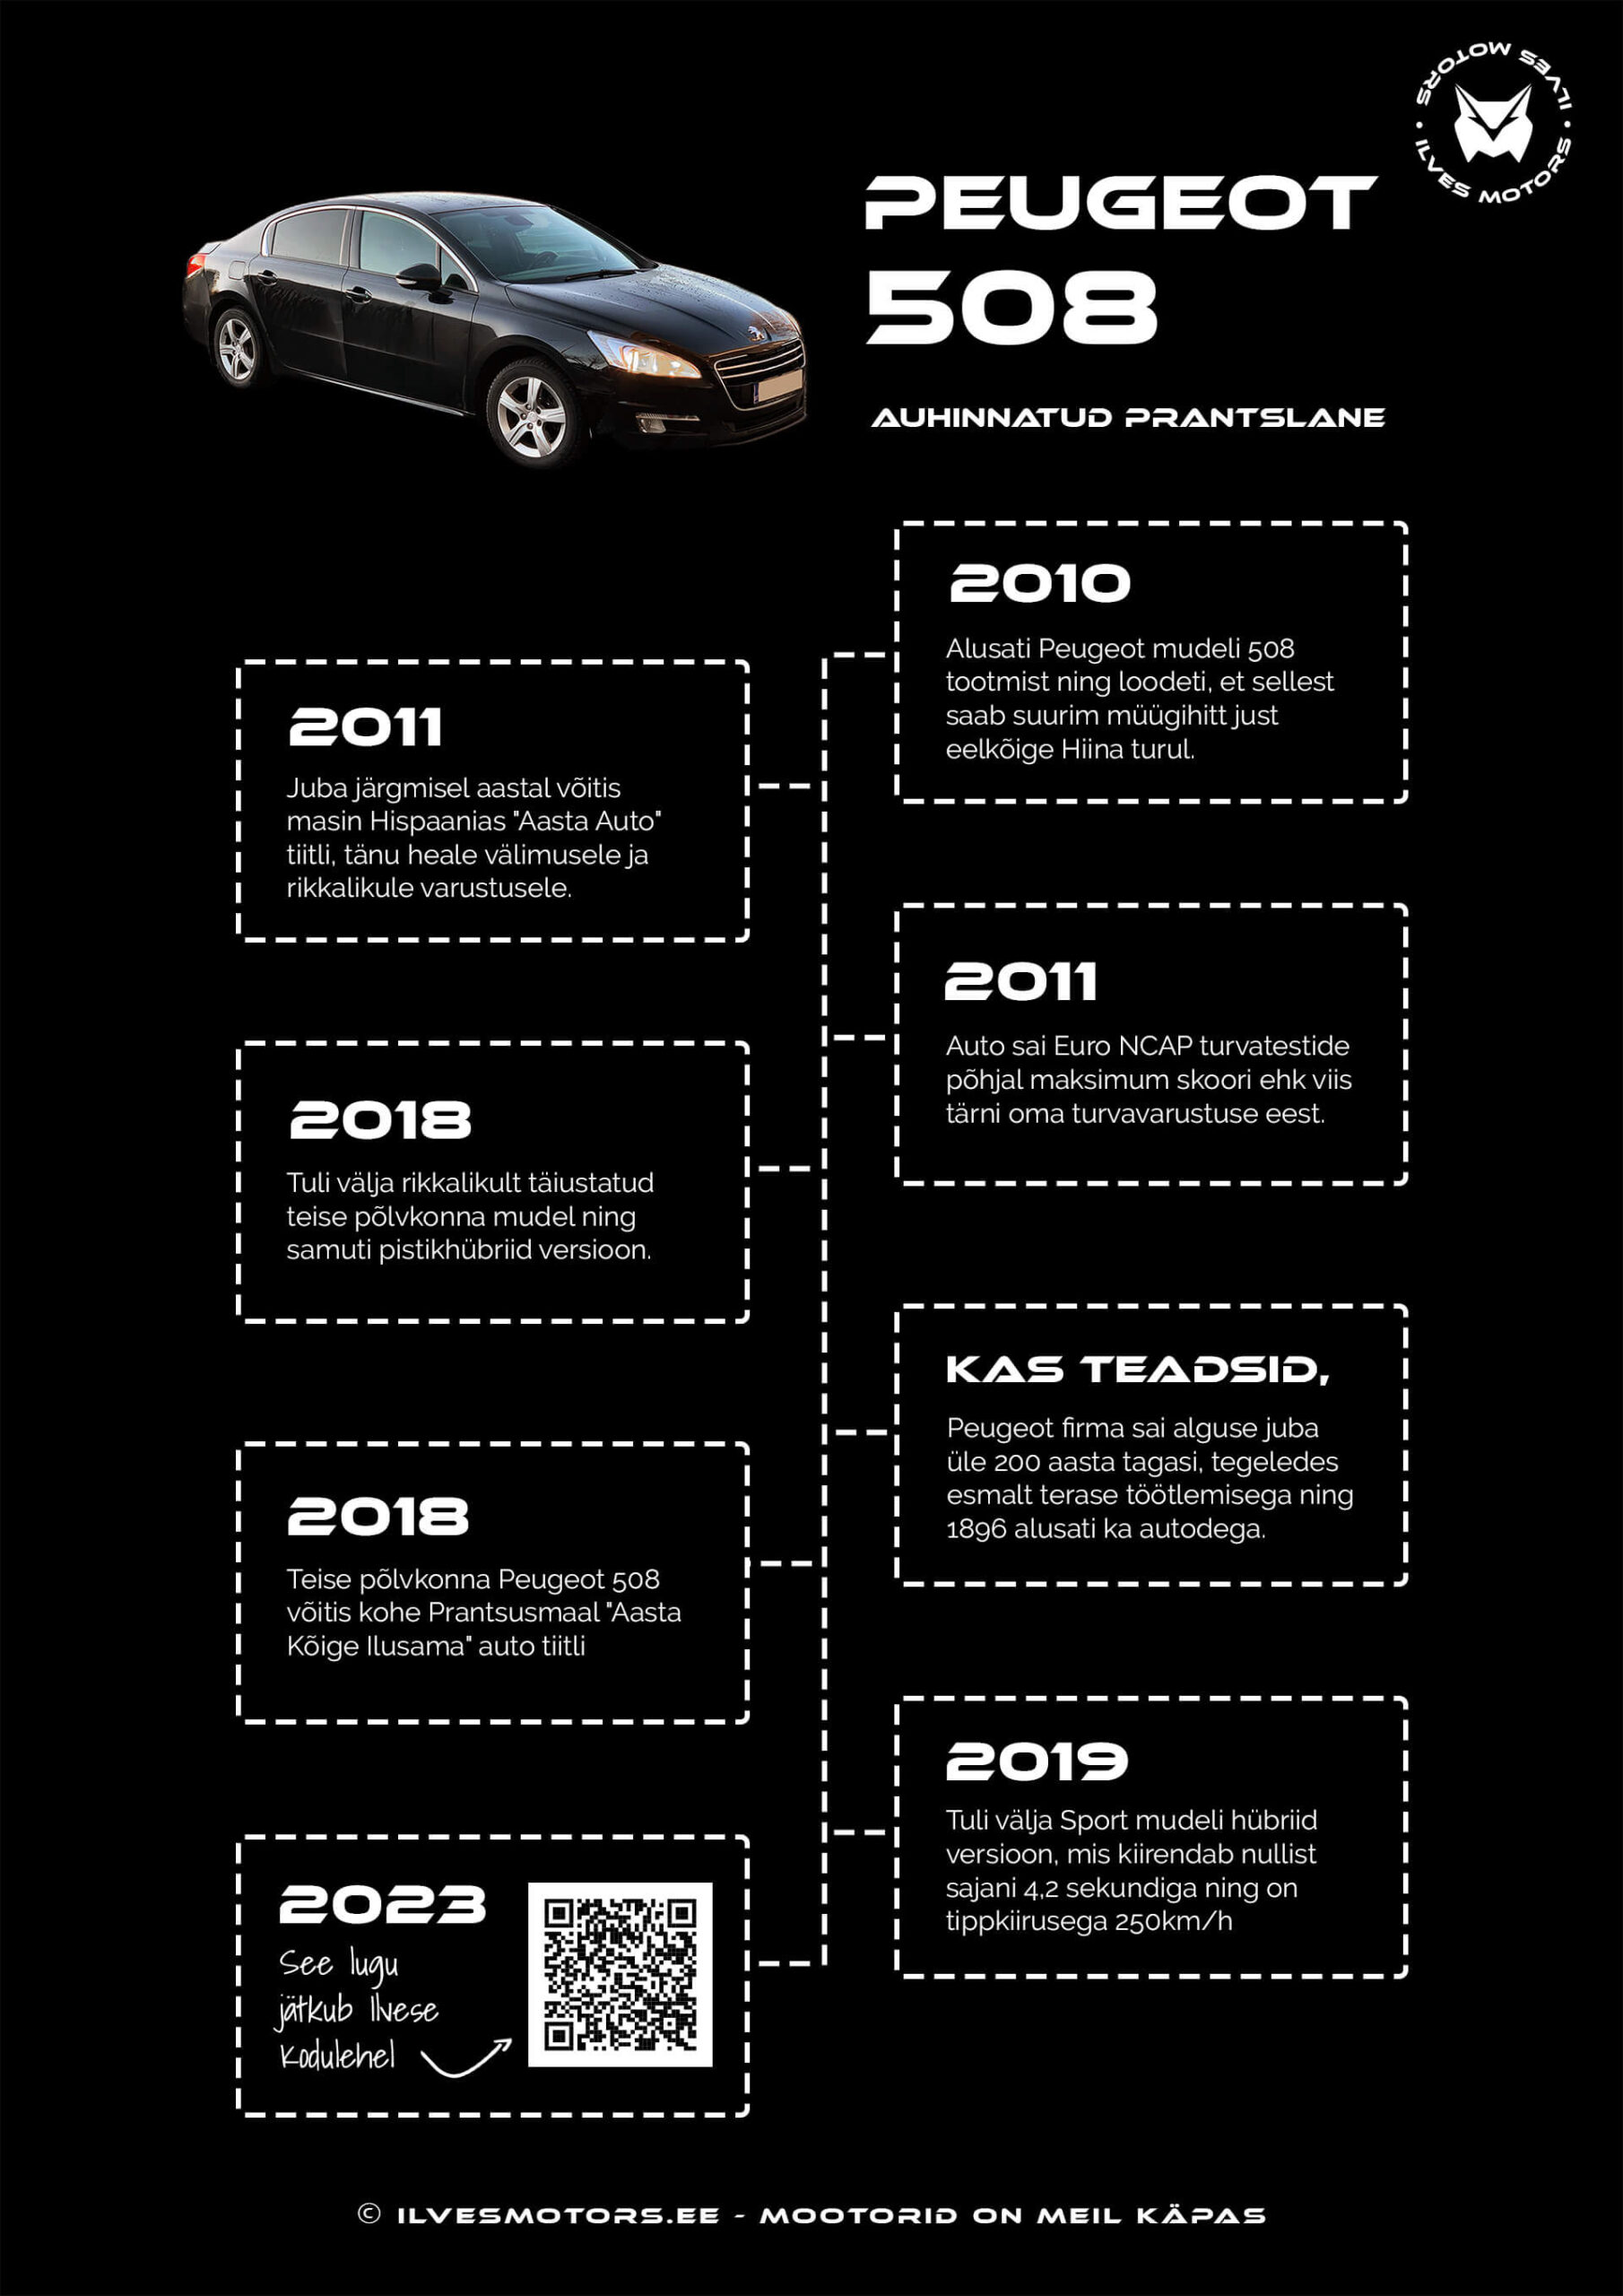 Peugeot 508 faktid ajajoonel